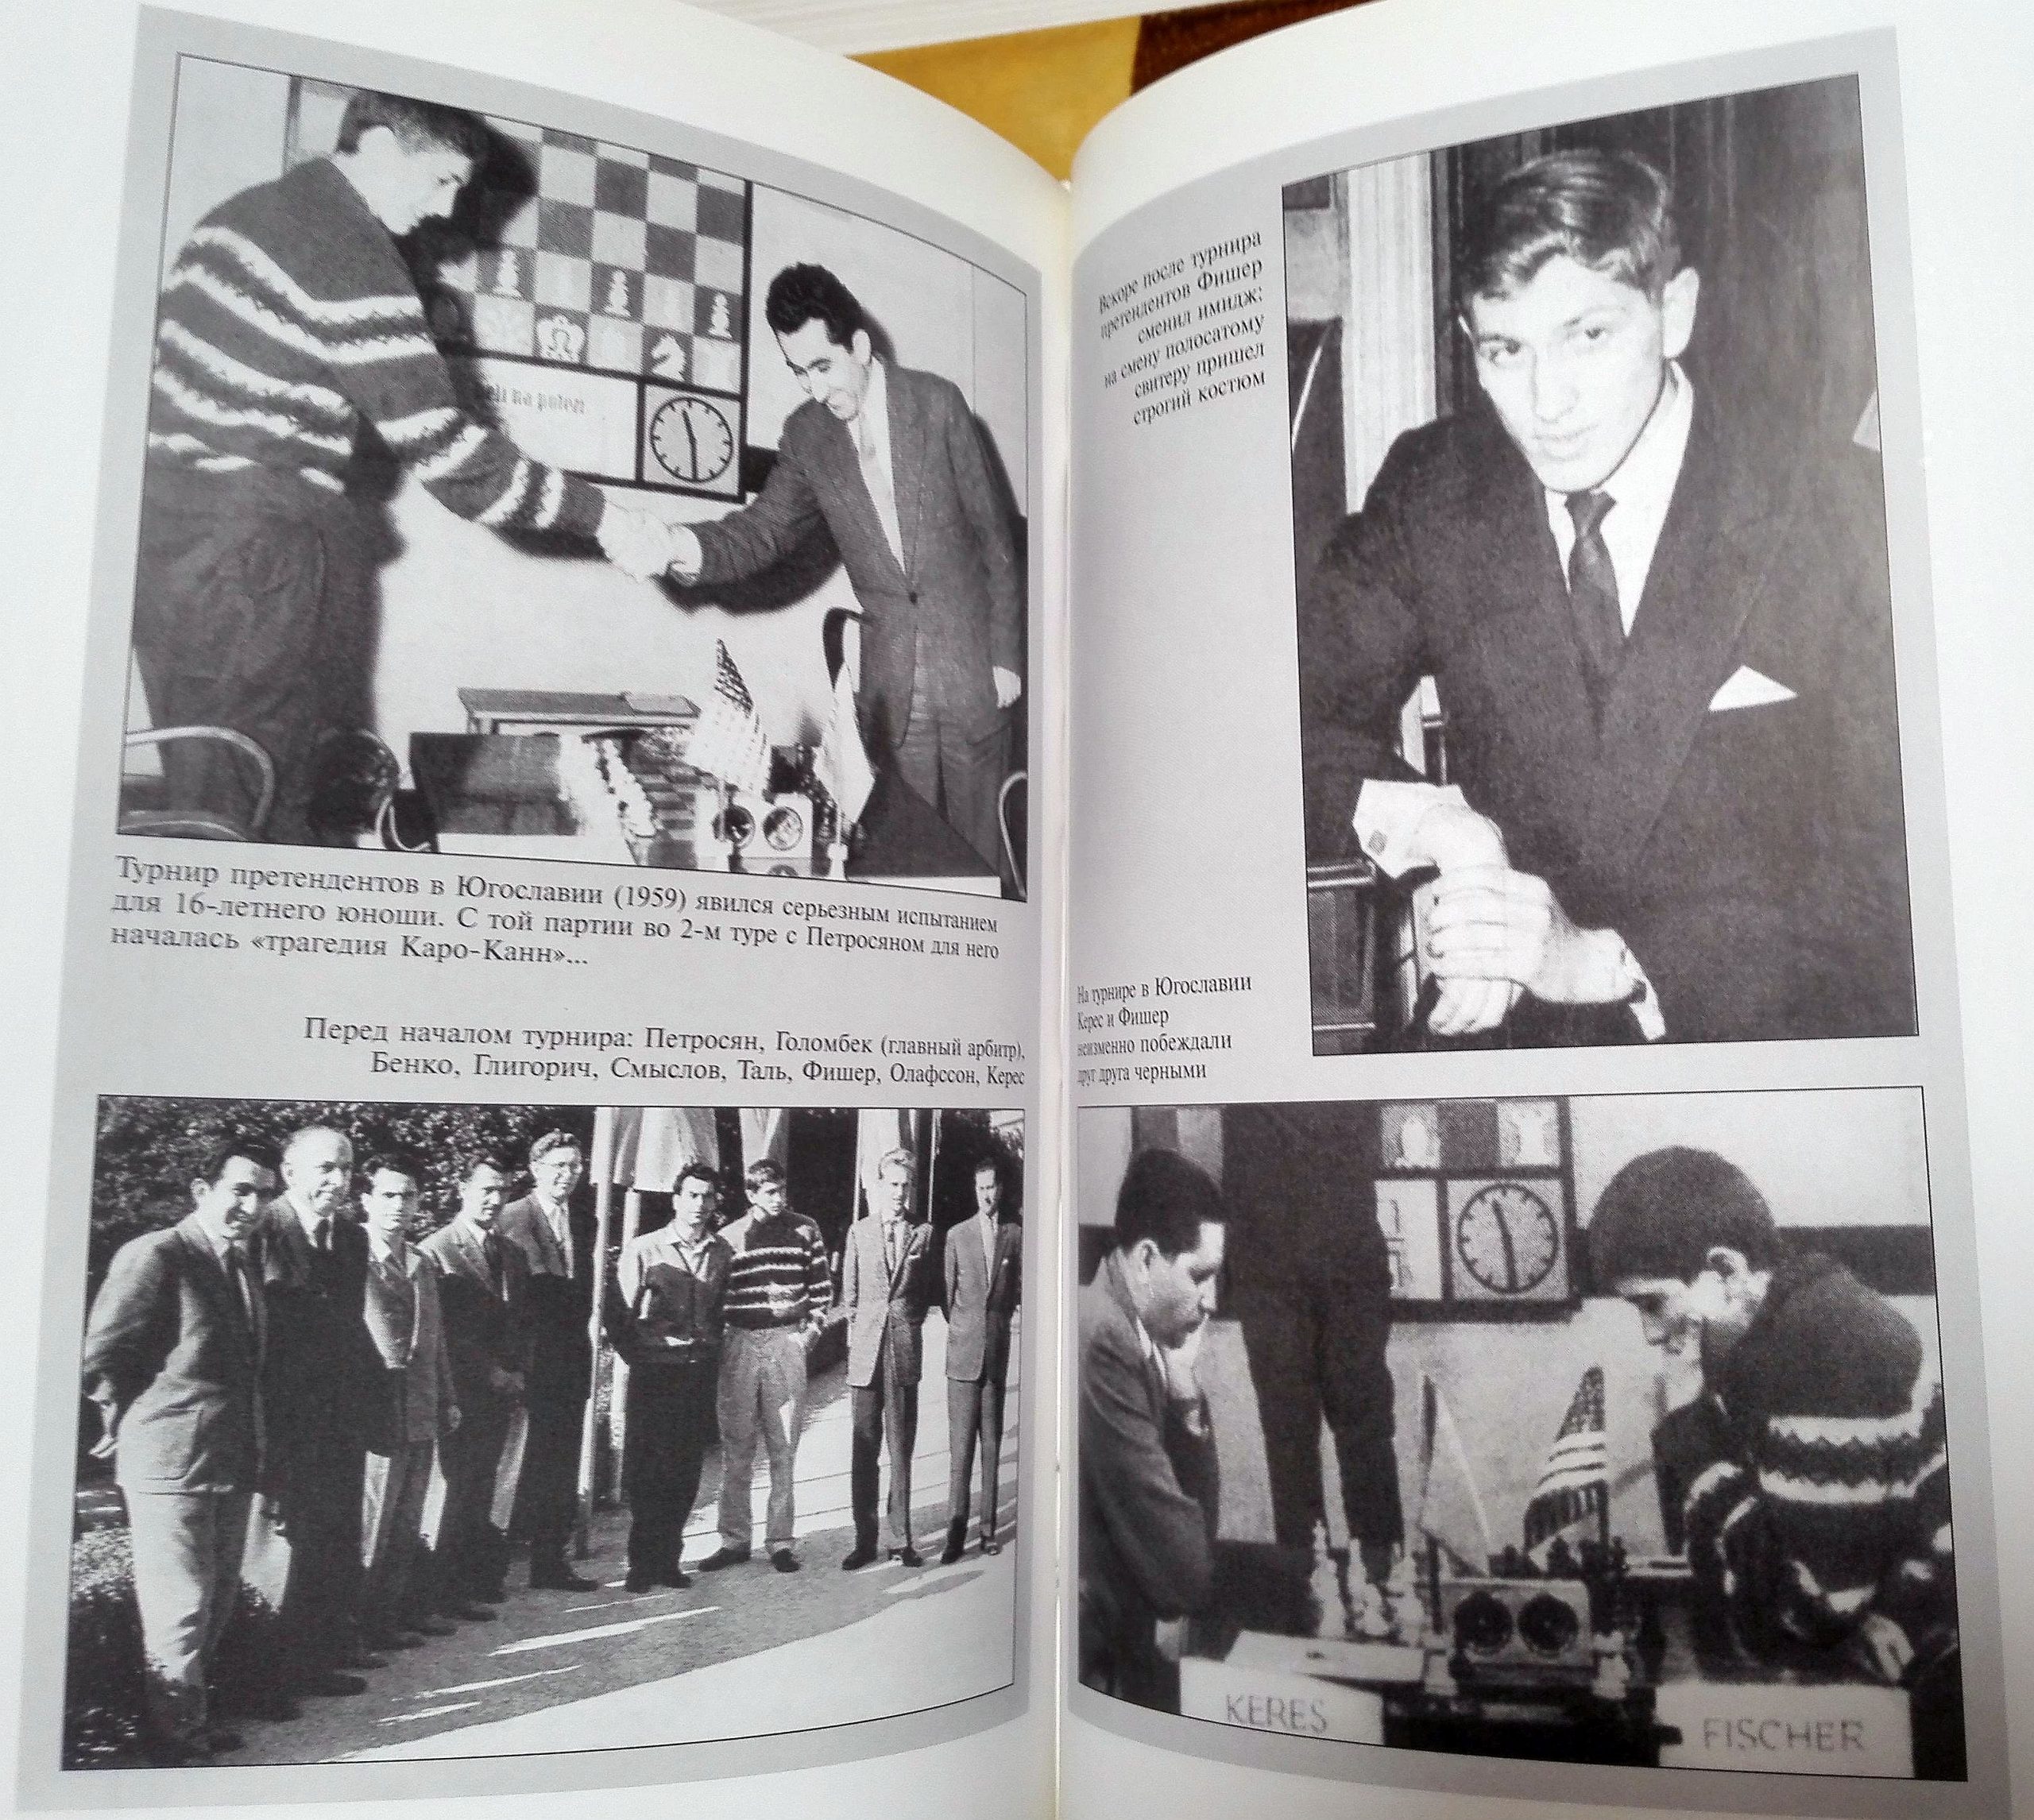 Garry Kasparov Chess Puzzle Book - 1995, Livros, à venda, Lisboa